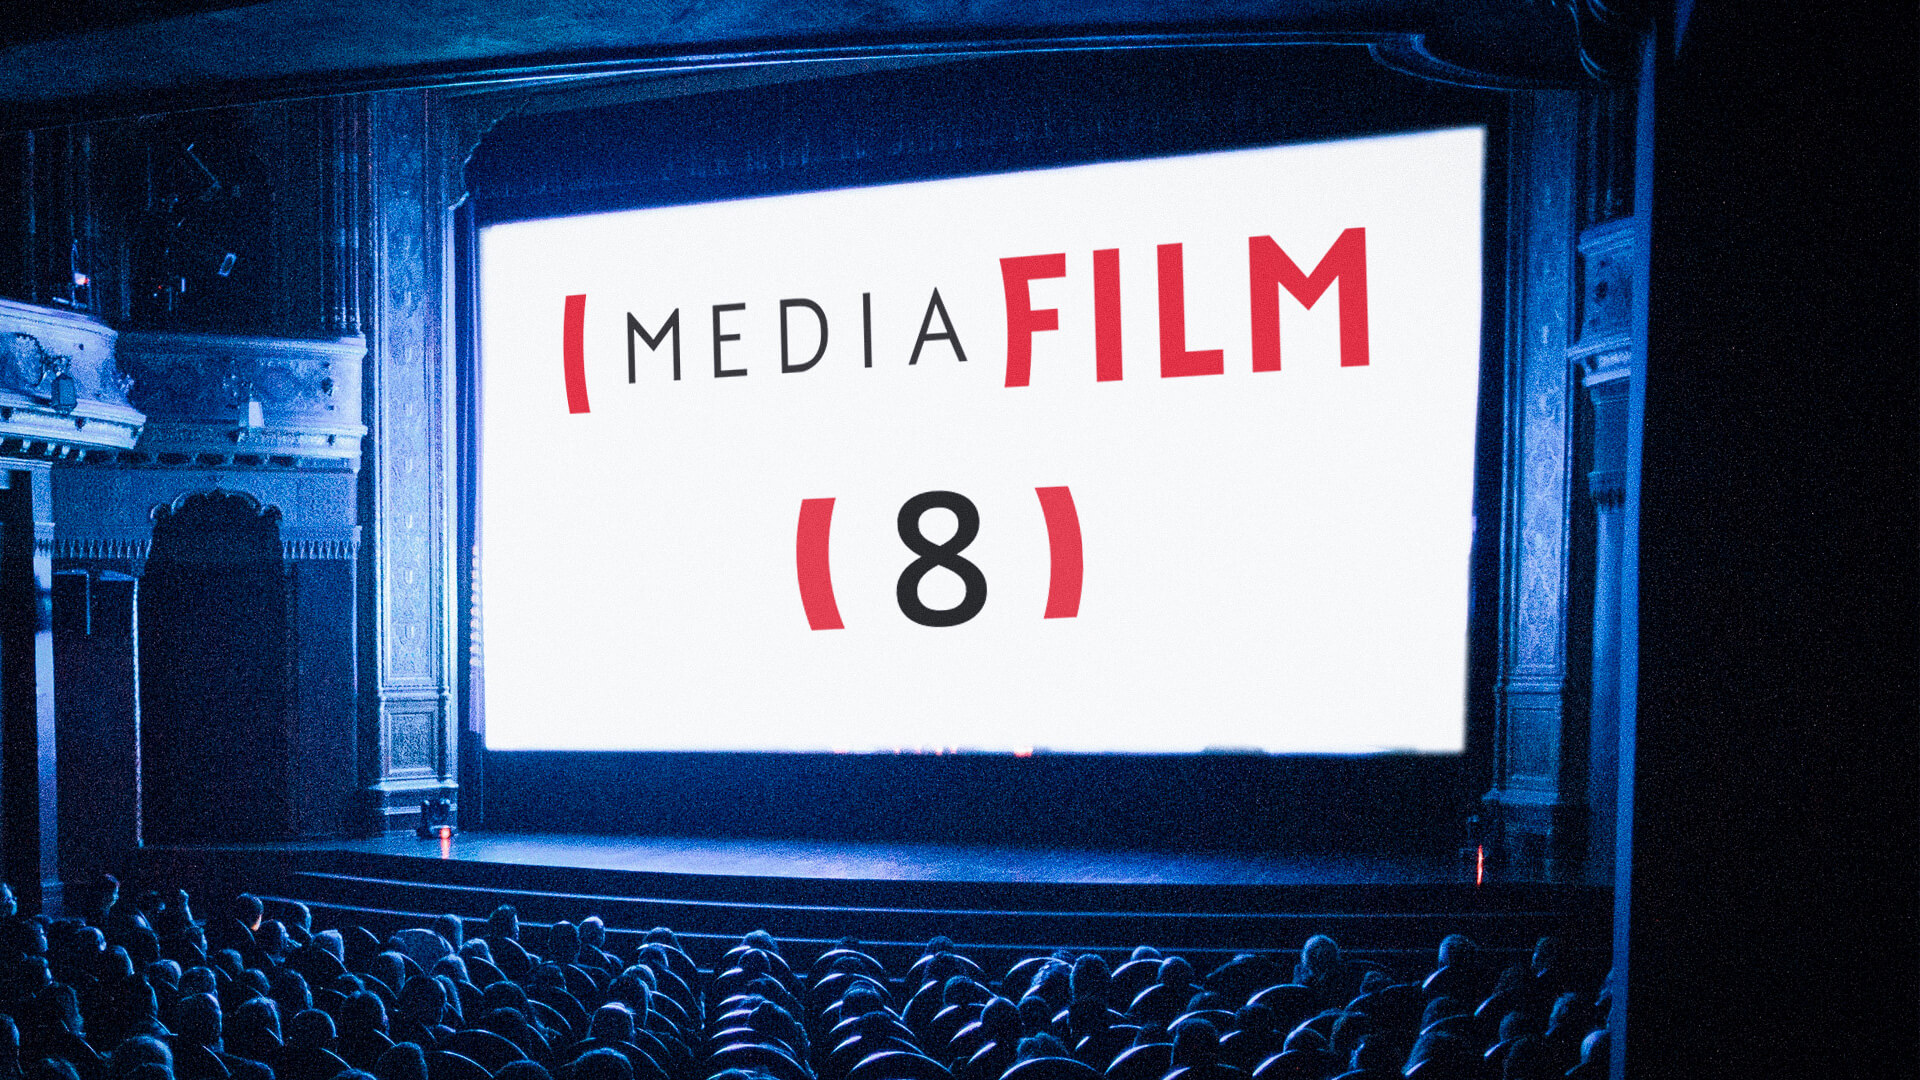 Mediafilm crée une nouvelle cote